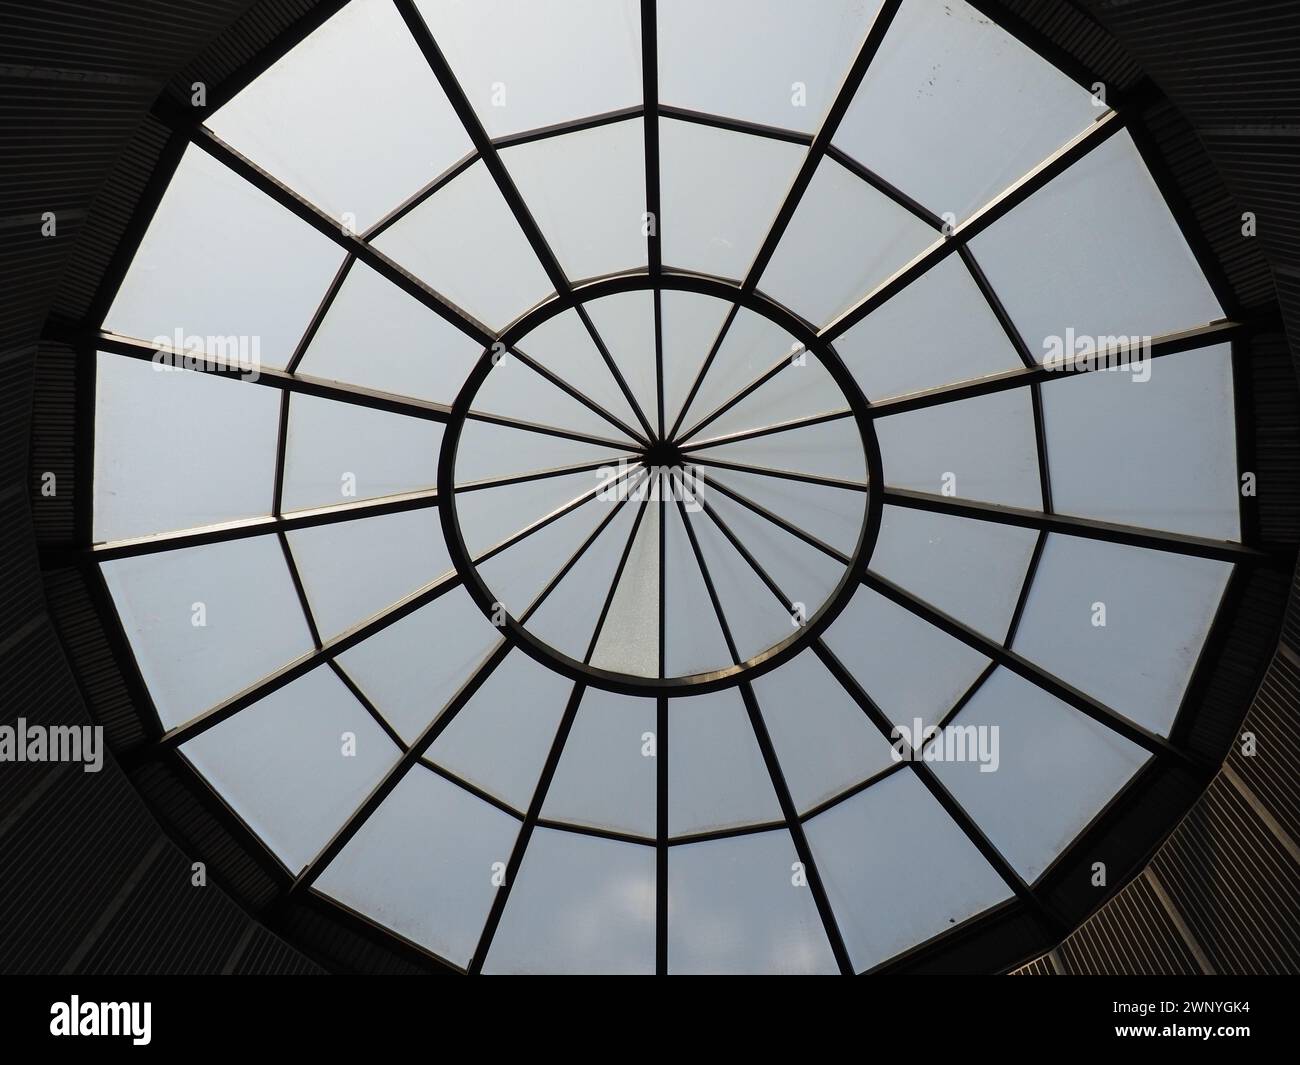 Cupola in vetro o finestrino rotondo nel tetto. Il cielo può essere visto attraverso una struttura trasparente in vetro nella volta dell'edificio. Stile architettonico Foto Stock